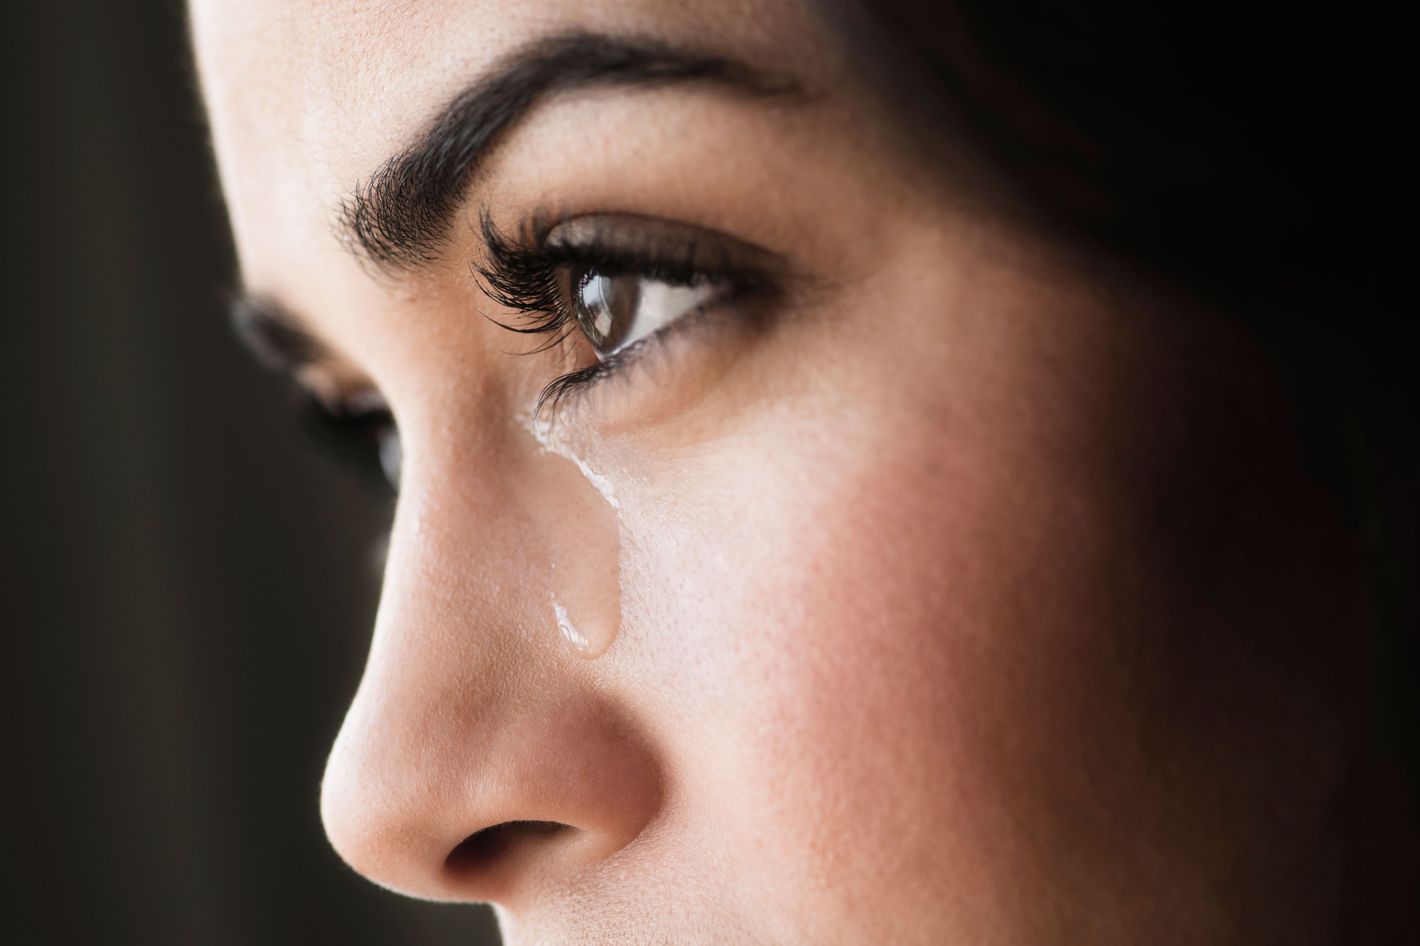 Мы проливаем слезы разной структуры в зависимости от причины, по которой мы плачем